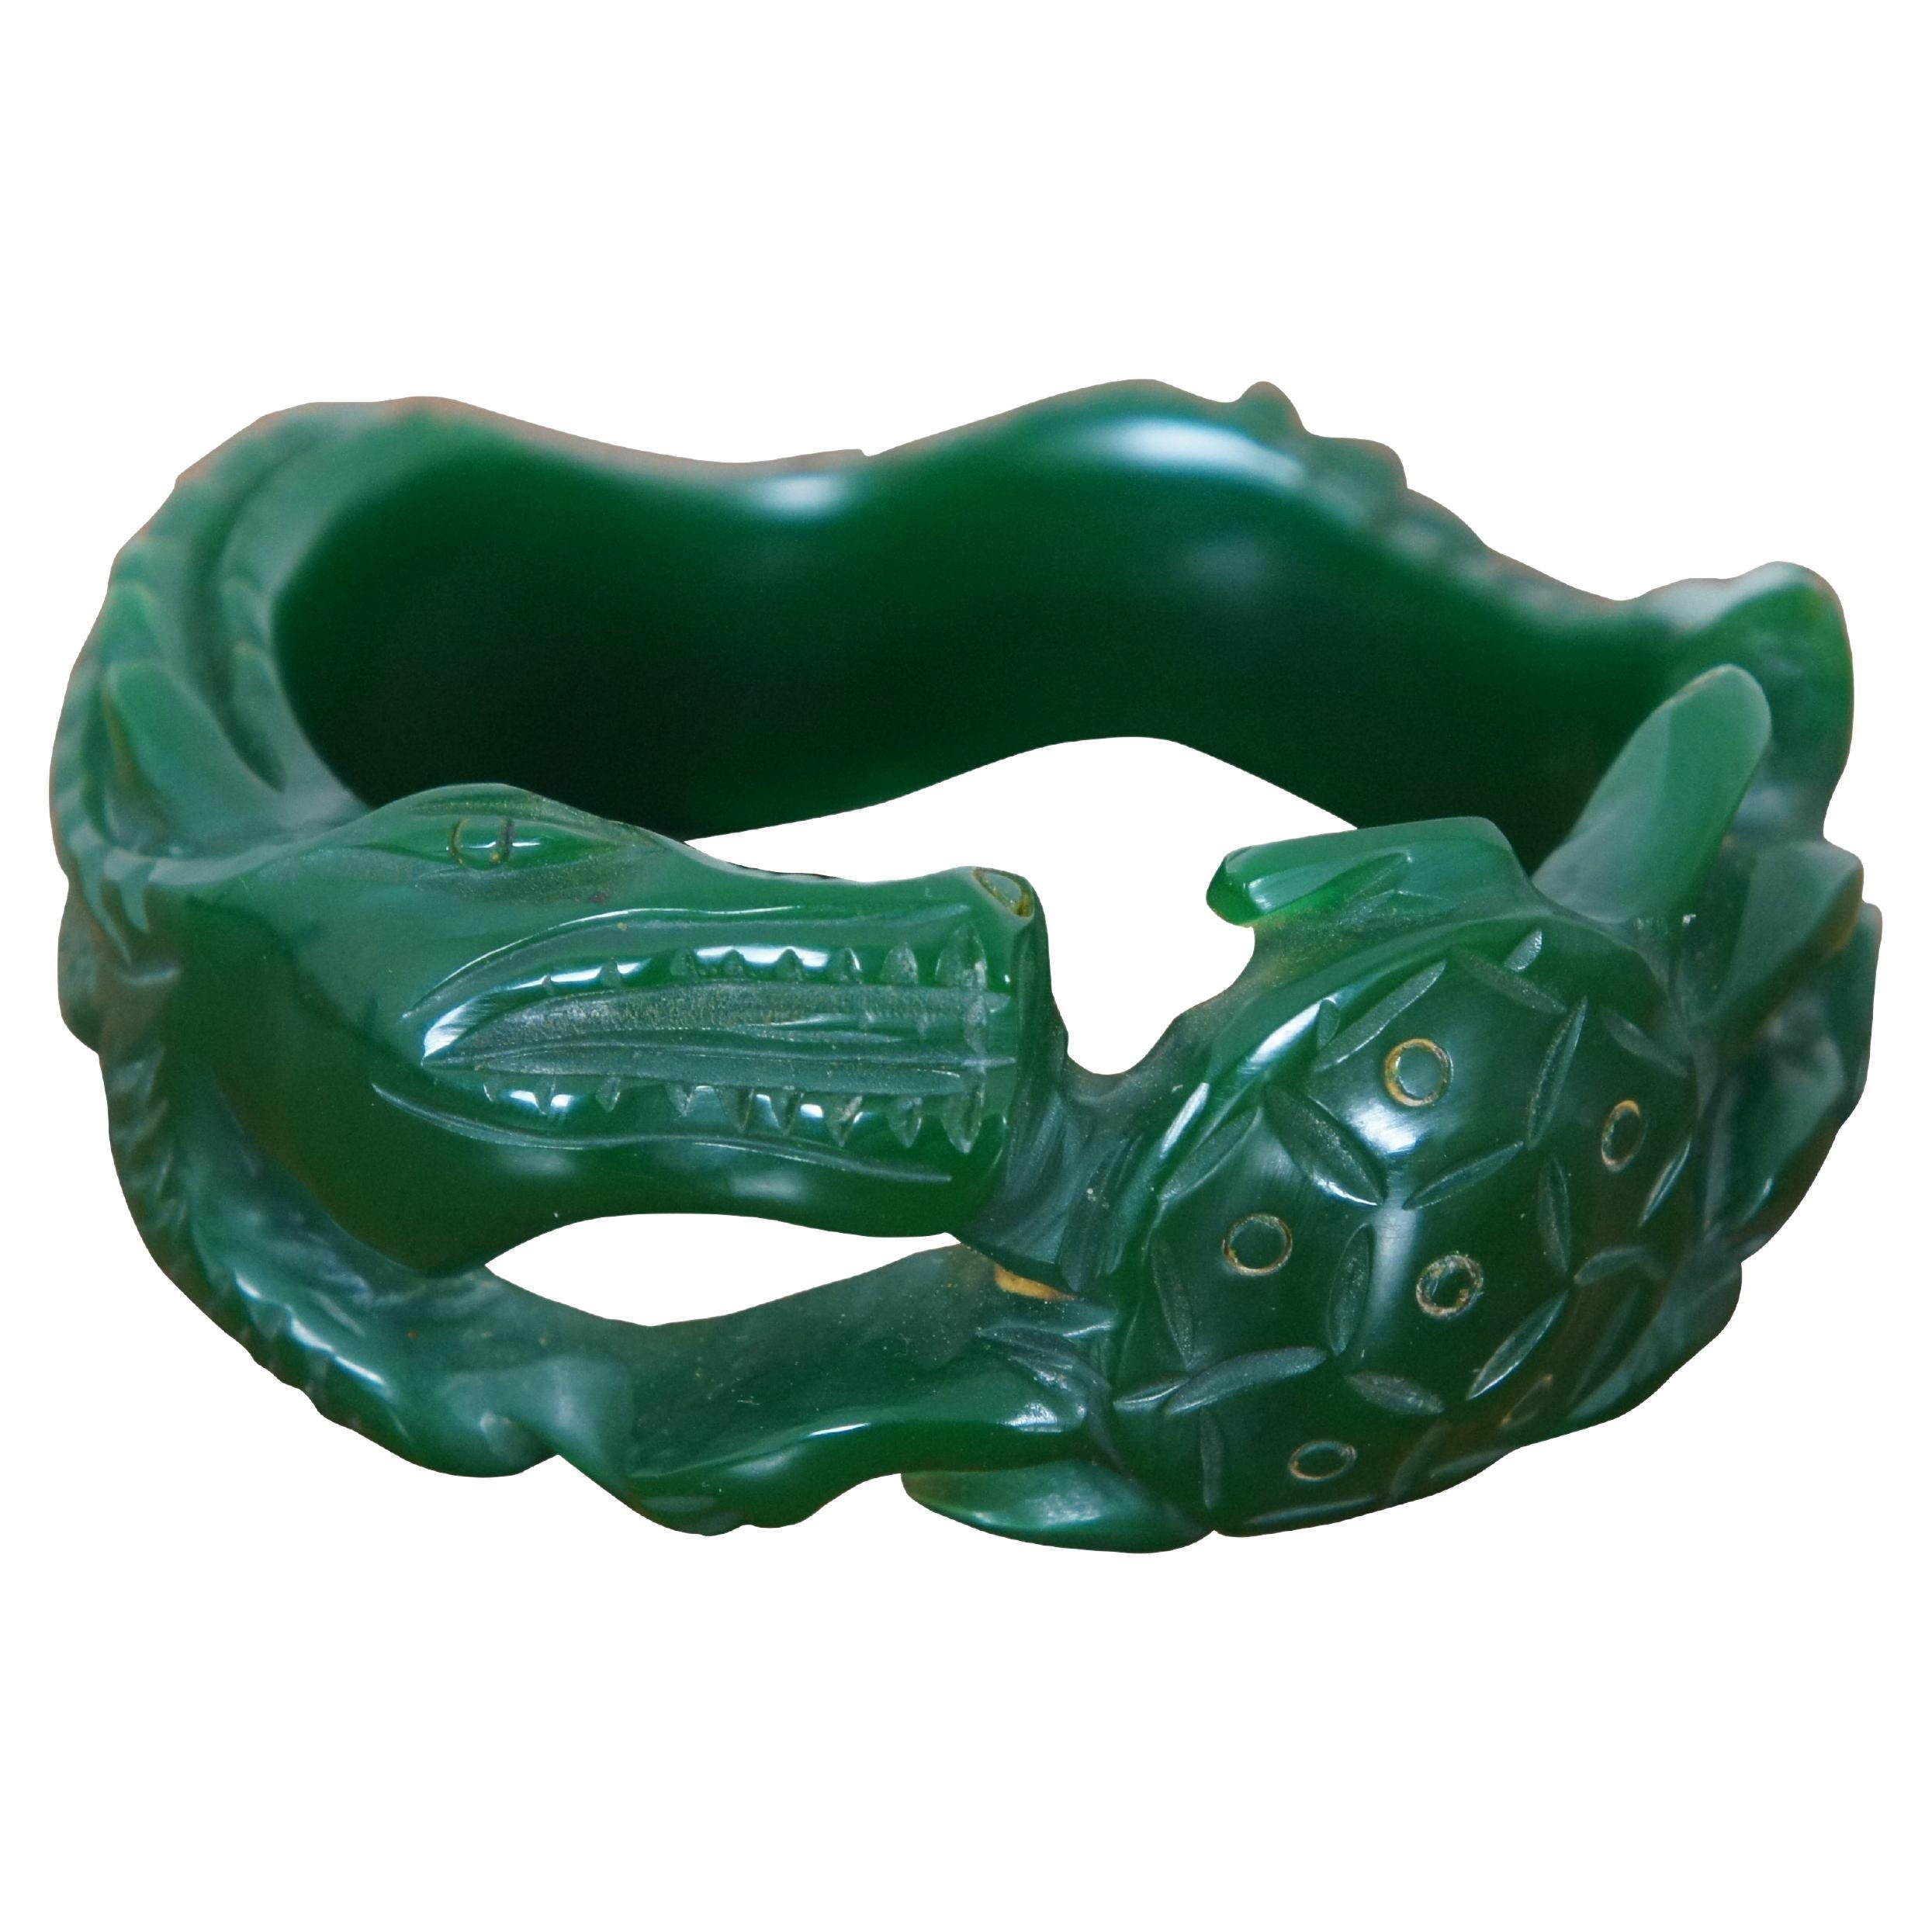 Vintage Carved Green Bakelite Alligator Crocodile Turtle Bangle Bracelet For Sale